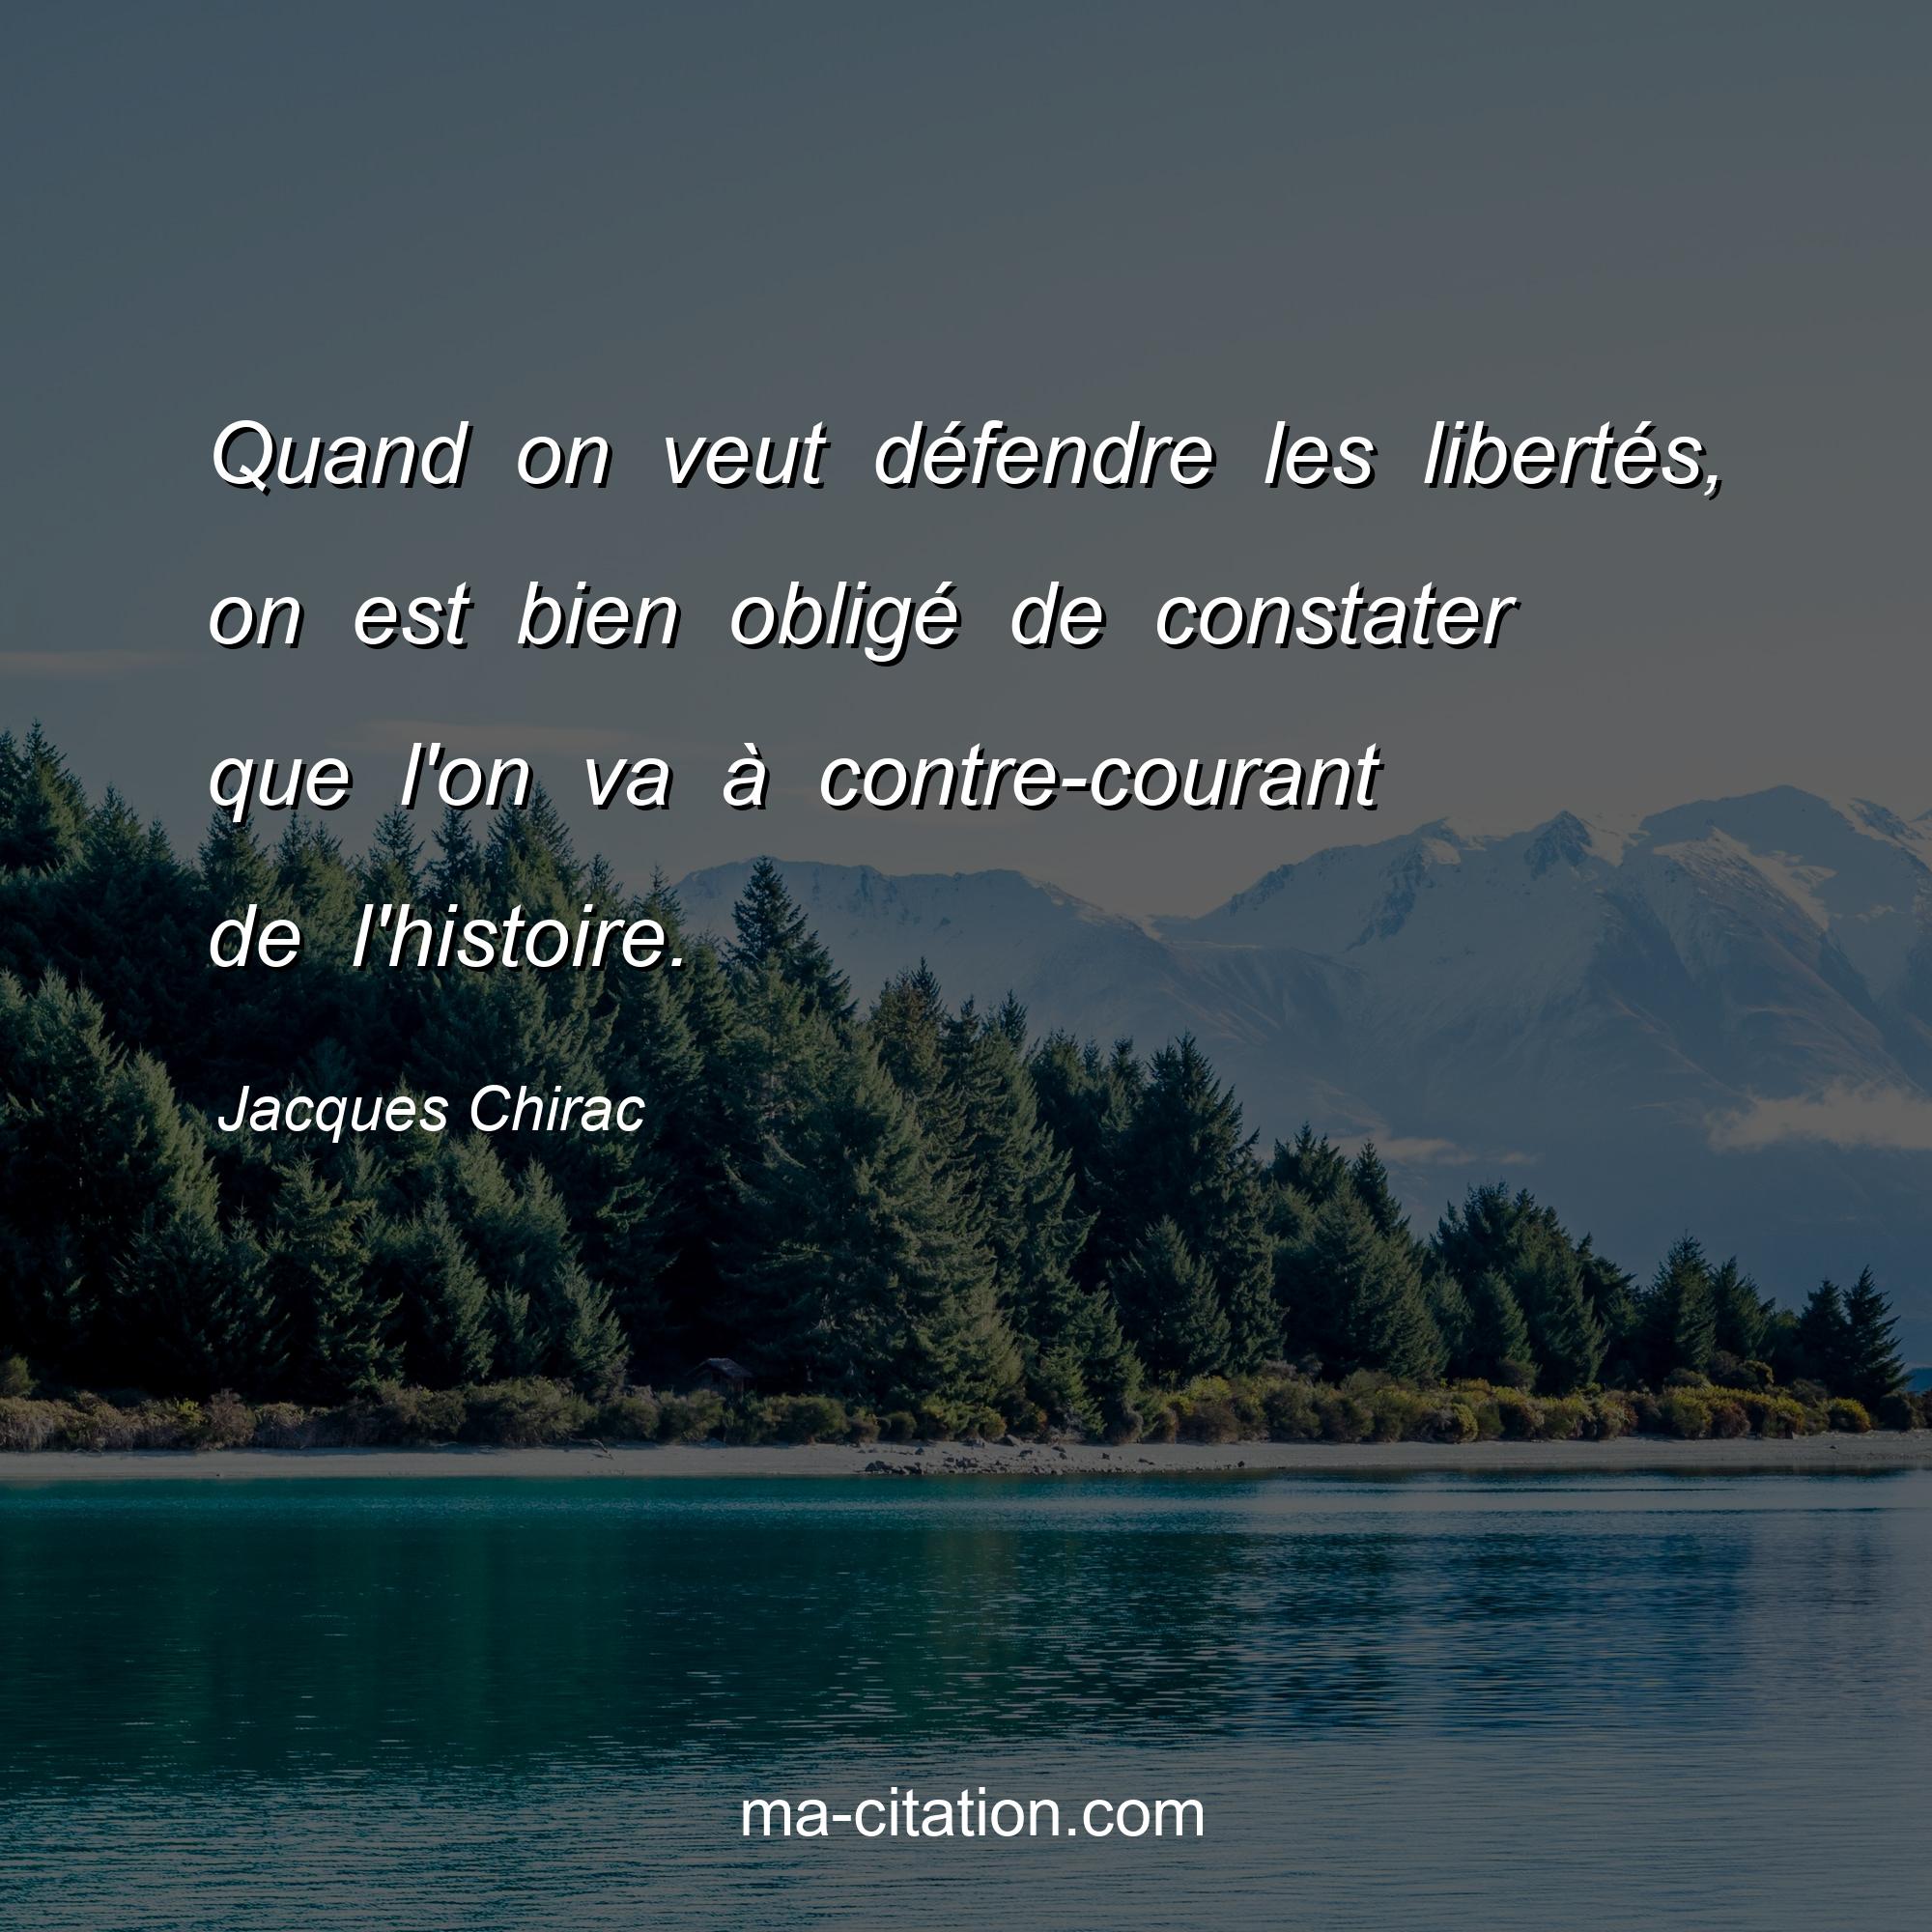 Jacques Chirac : Quand on veut défendre les libertés, on est bien obligé de constater que l'on va à contre-courant de l'histoire.